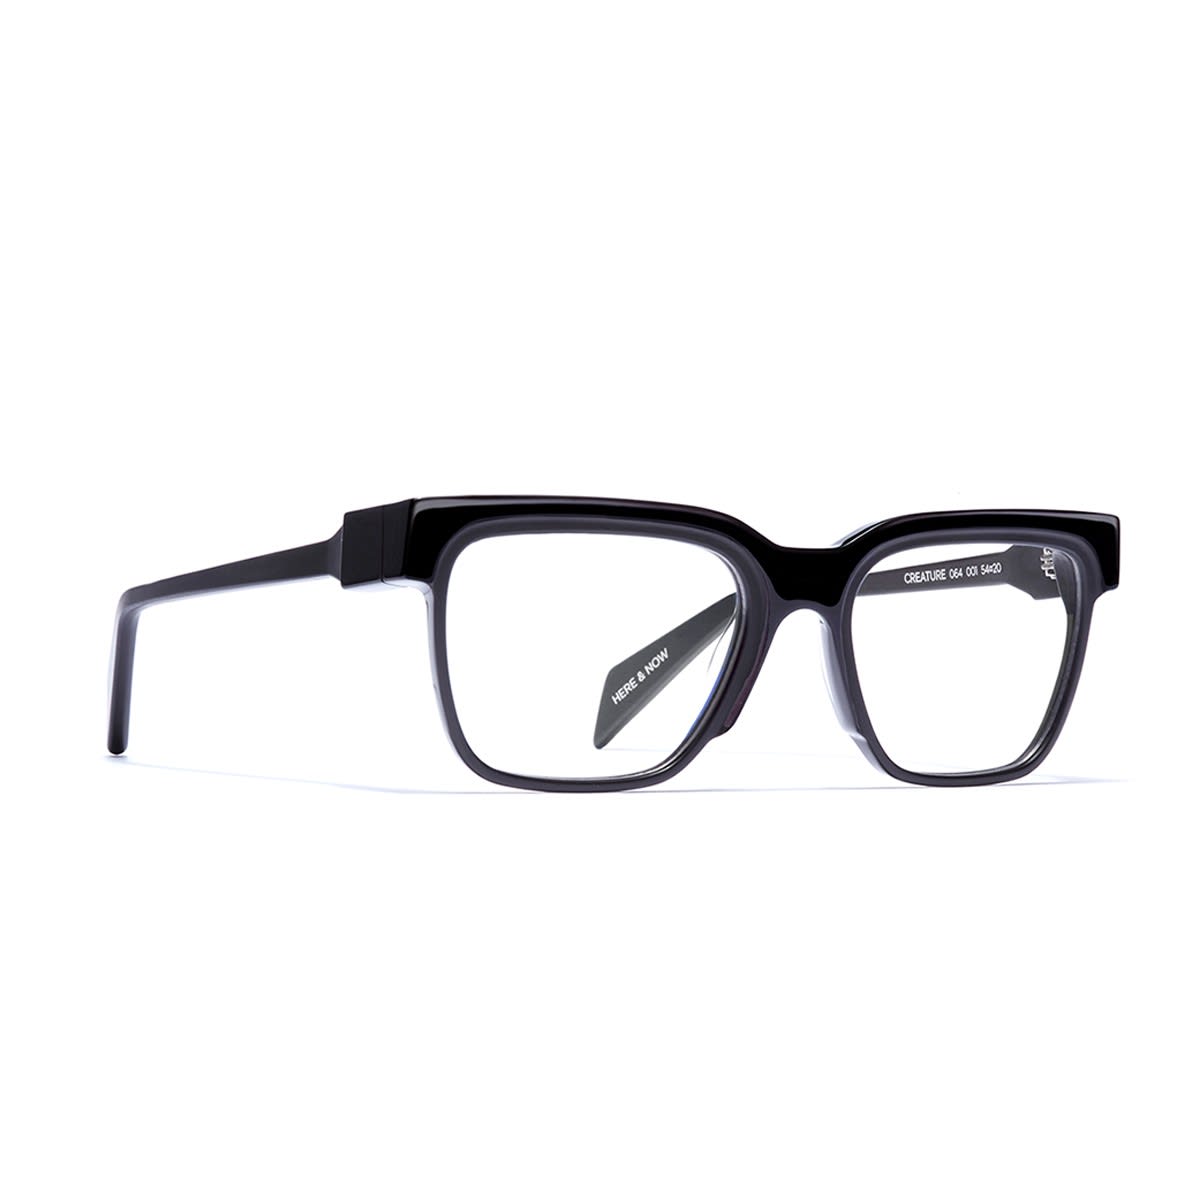 Siens Eye Code 064 Glasses